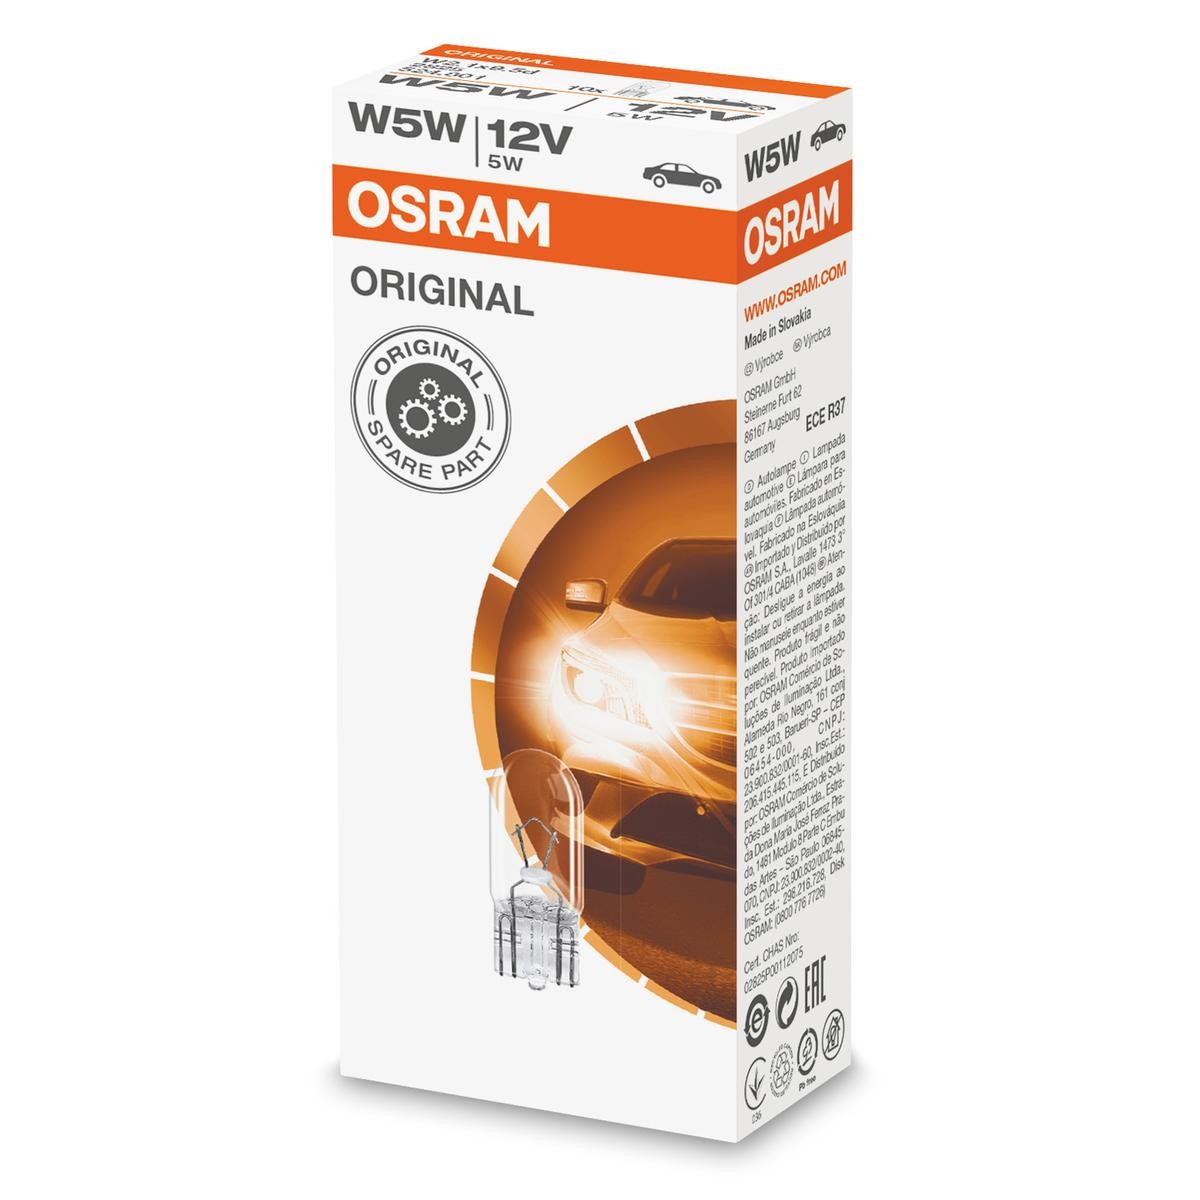 W5W OSRAM 2825 - Système électronique RENAULT MASTER à un prix avantageux